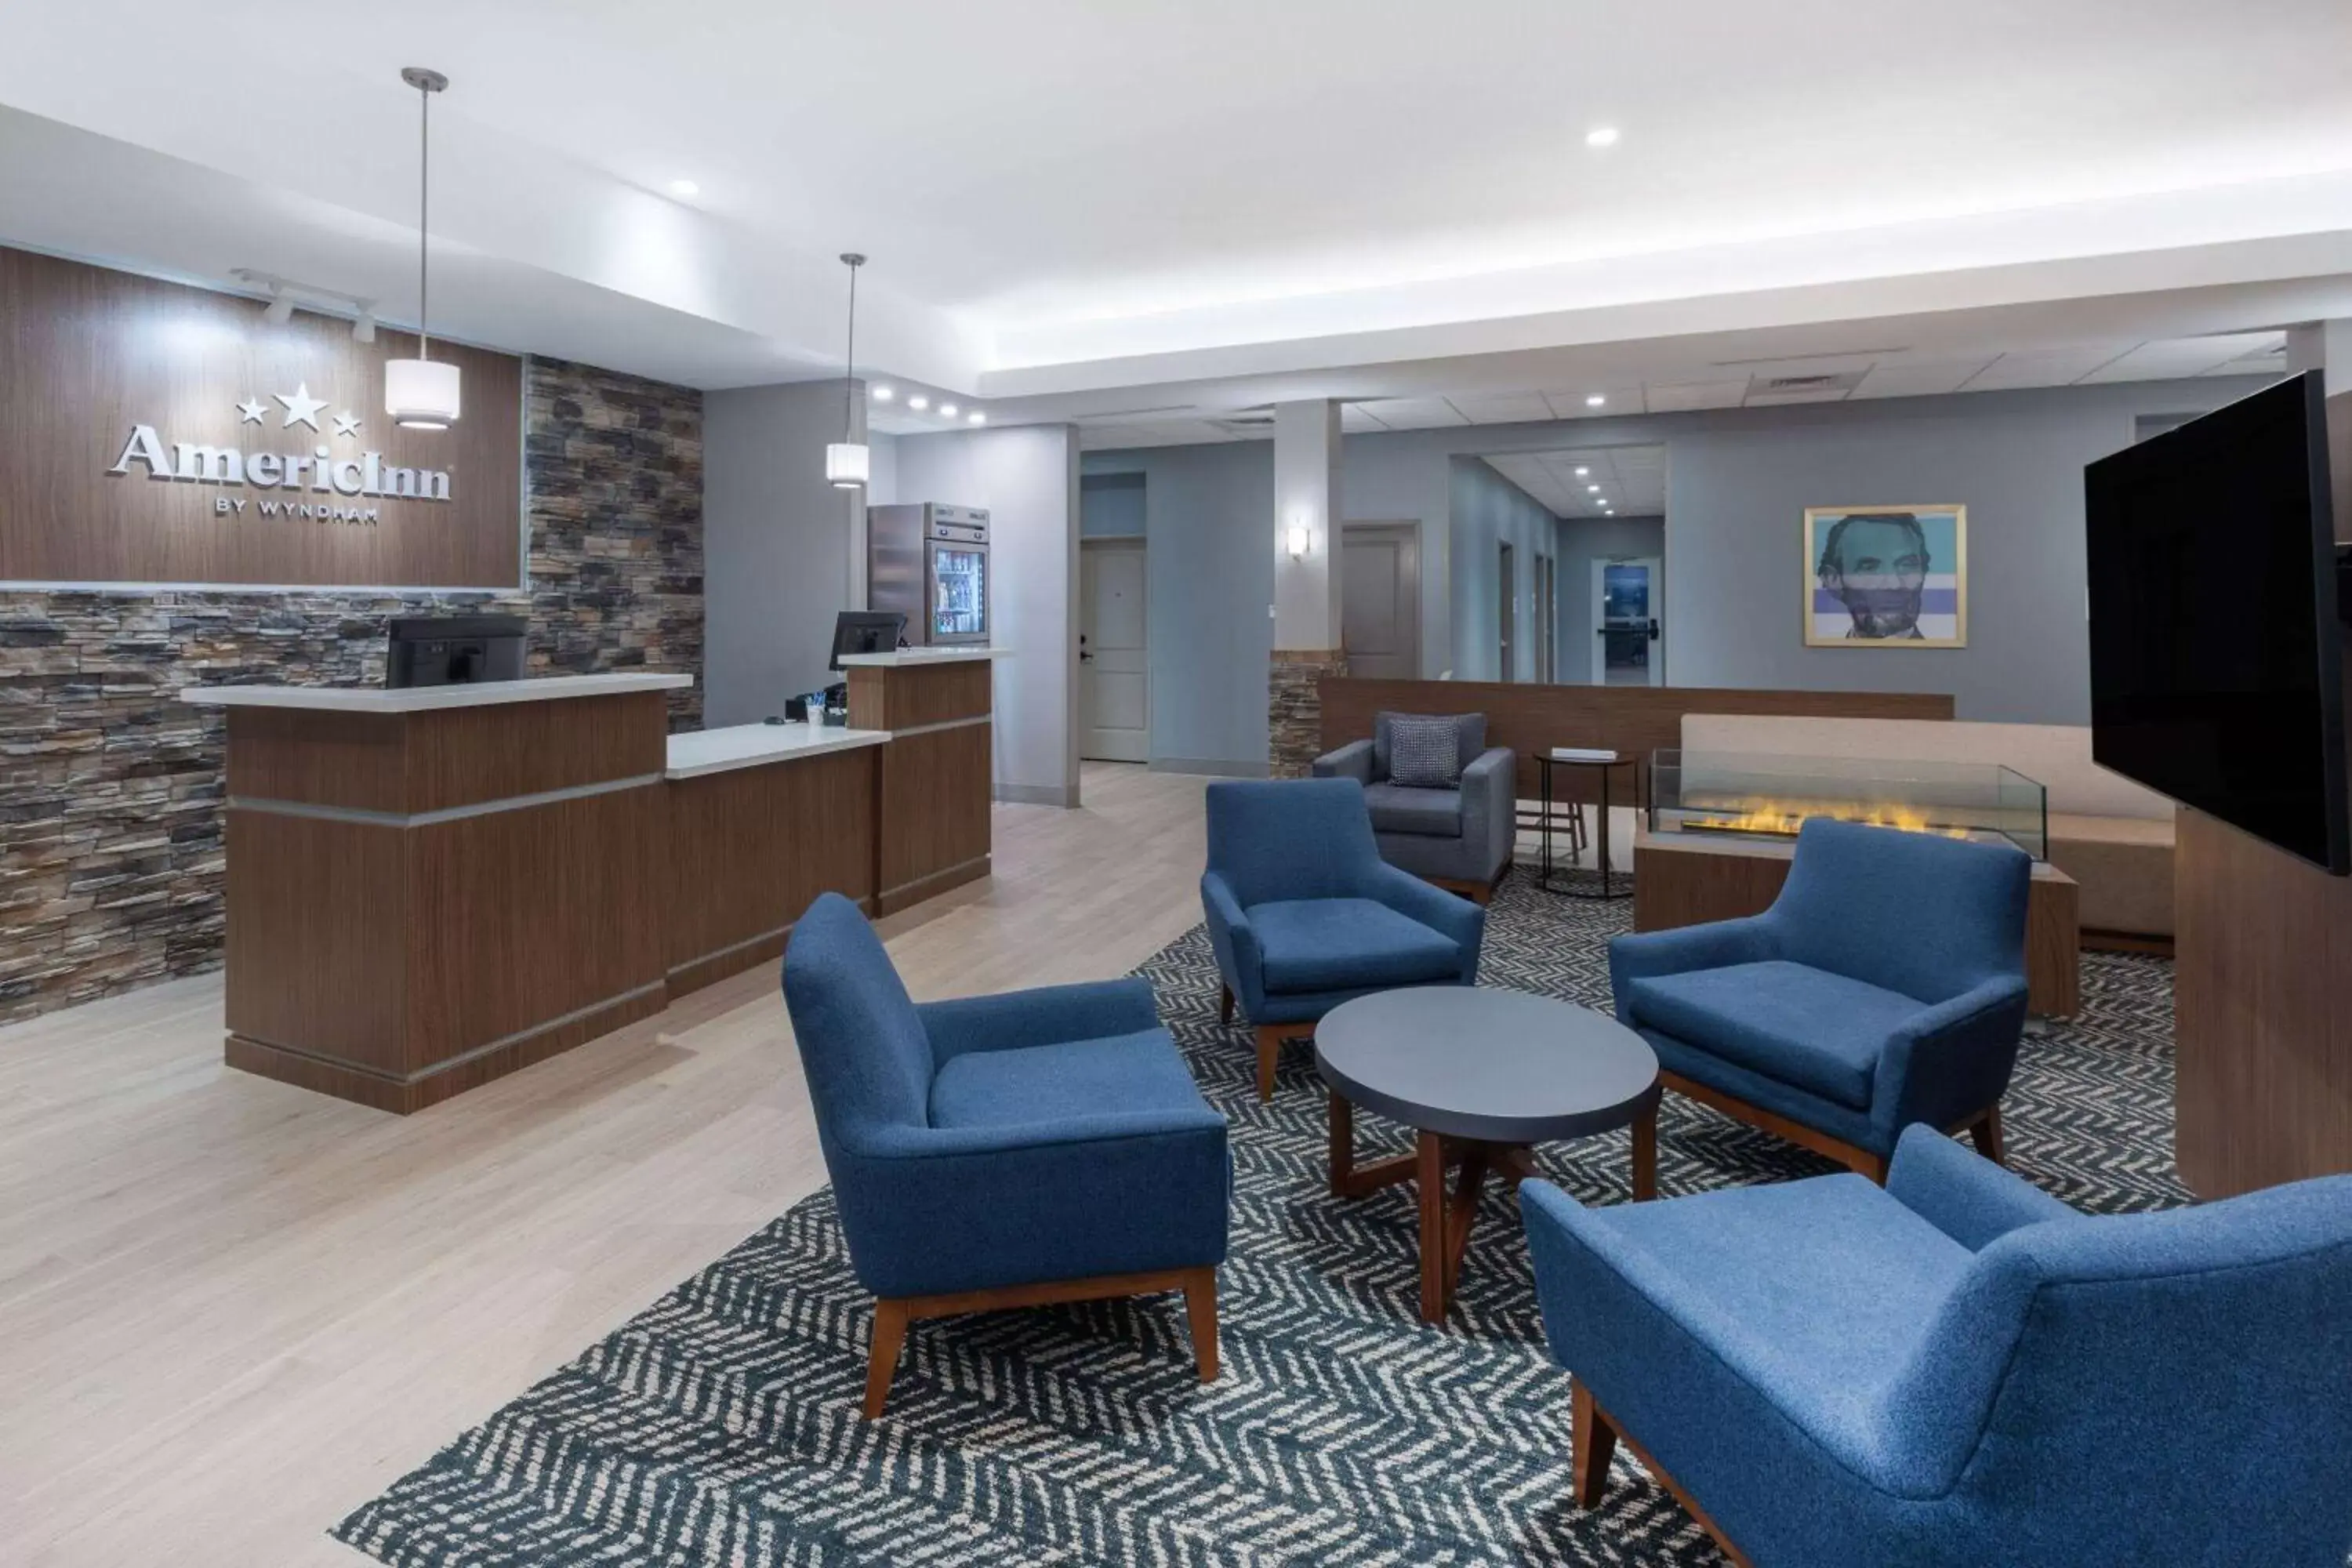 Lobby or reception, Lobby/Reception in AmericInn by Wyndham Mountain Home